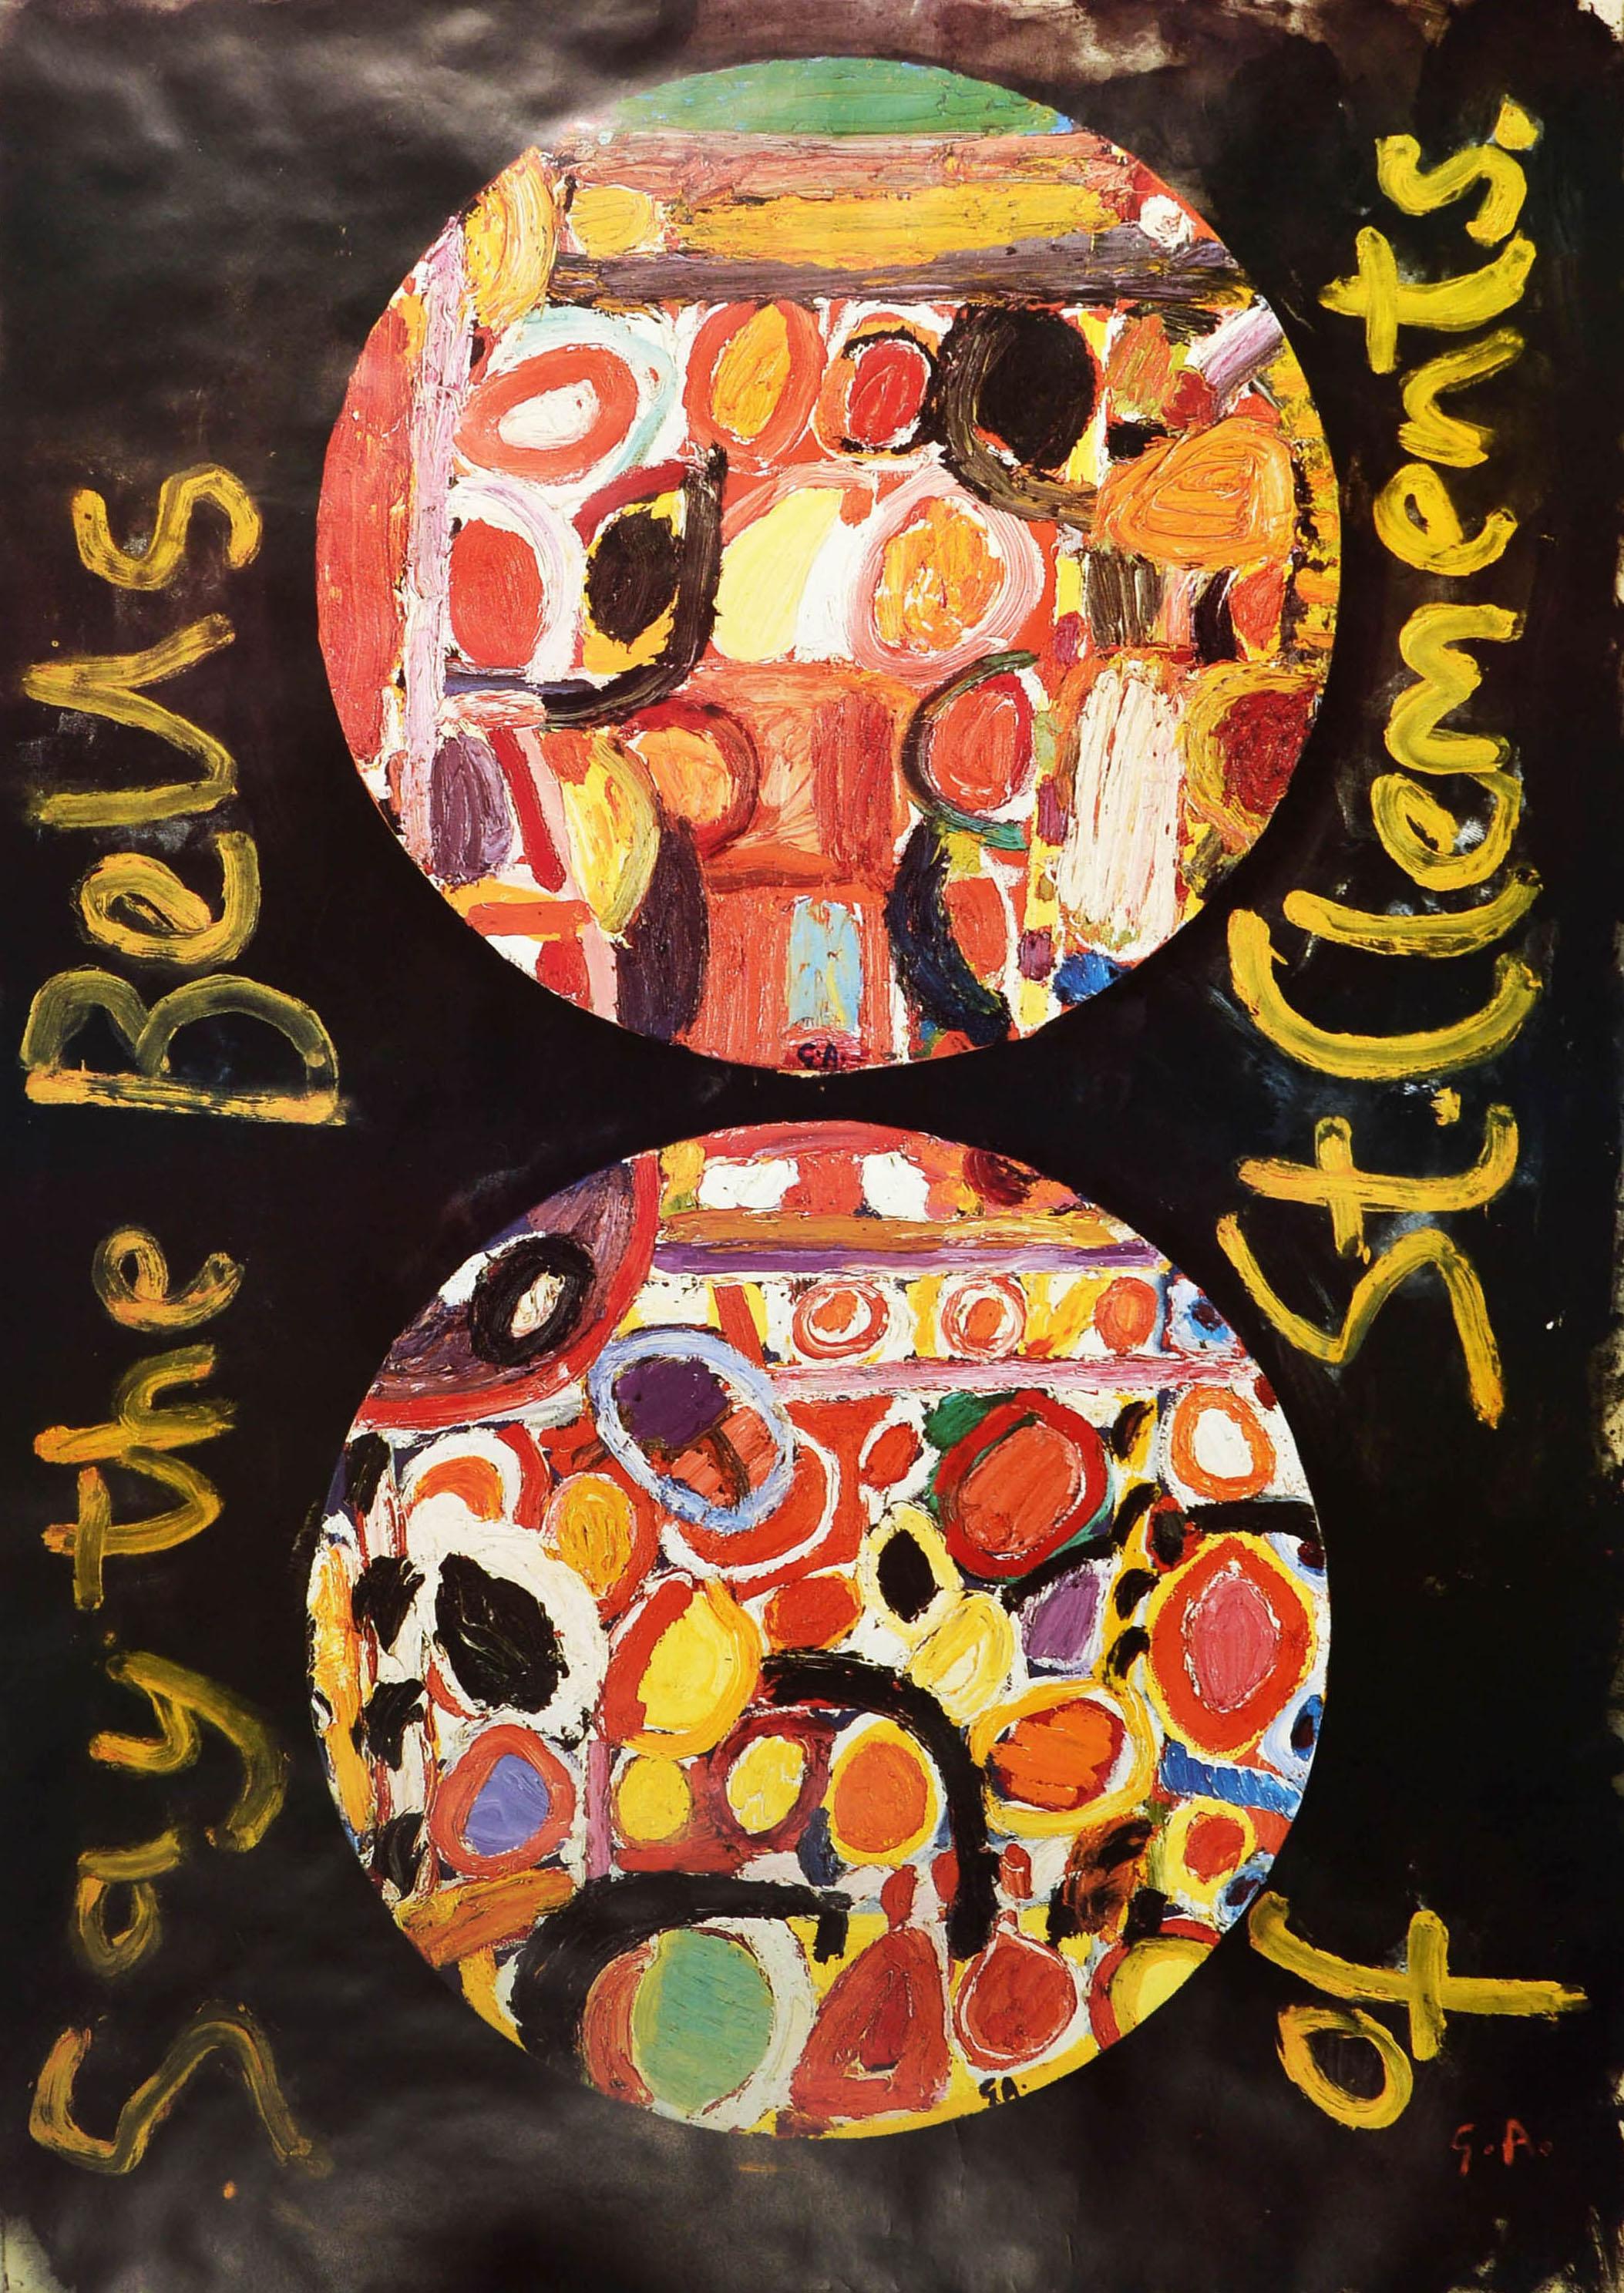 Original Vintage London Transport Poster - Oranges and Lemons and City churches by Tube - mit einem farbenfrohen abstrakten Design in zwei Kreisen auf schwarzem Hintergrund mit gemaltem Text an den Seiten, der lautet Say the Bells of St. Clements